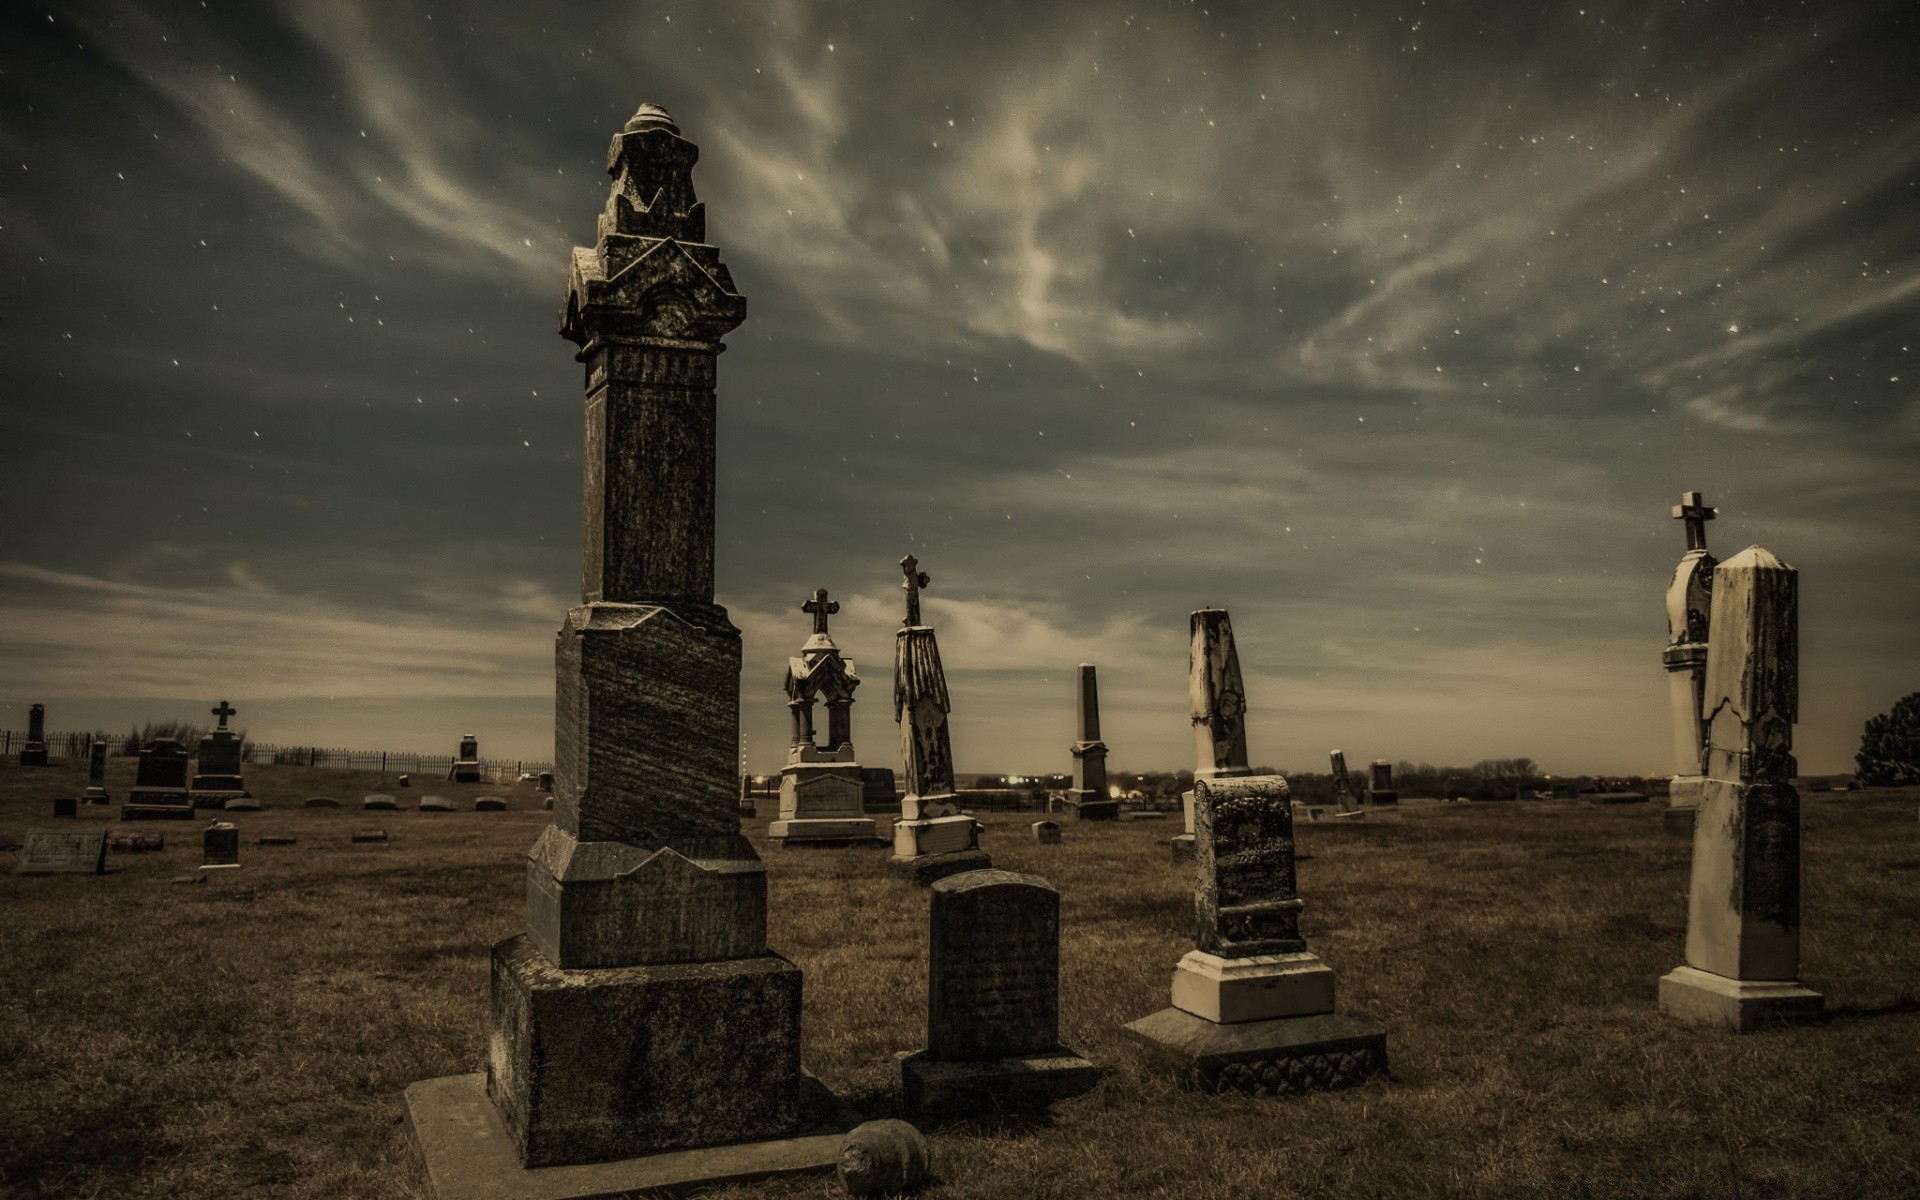 хэллоуин кладбище монохромный закат архитектура путешествия небо могила на открытом воздухе религия свет башня статуя